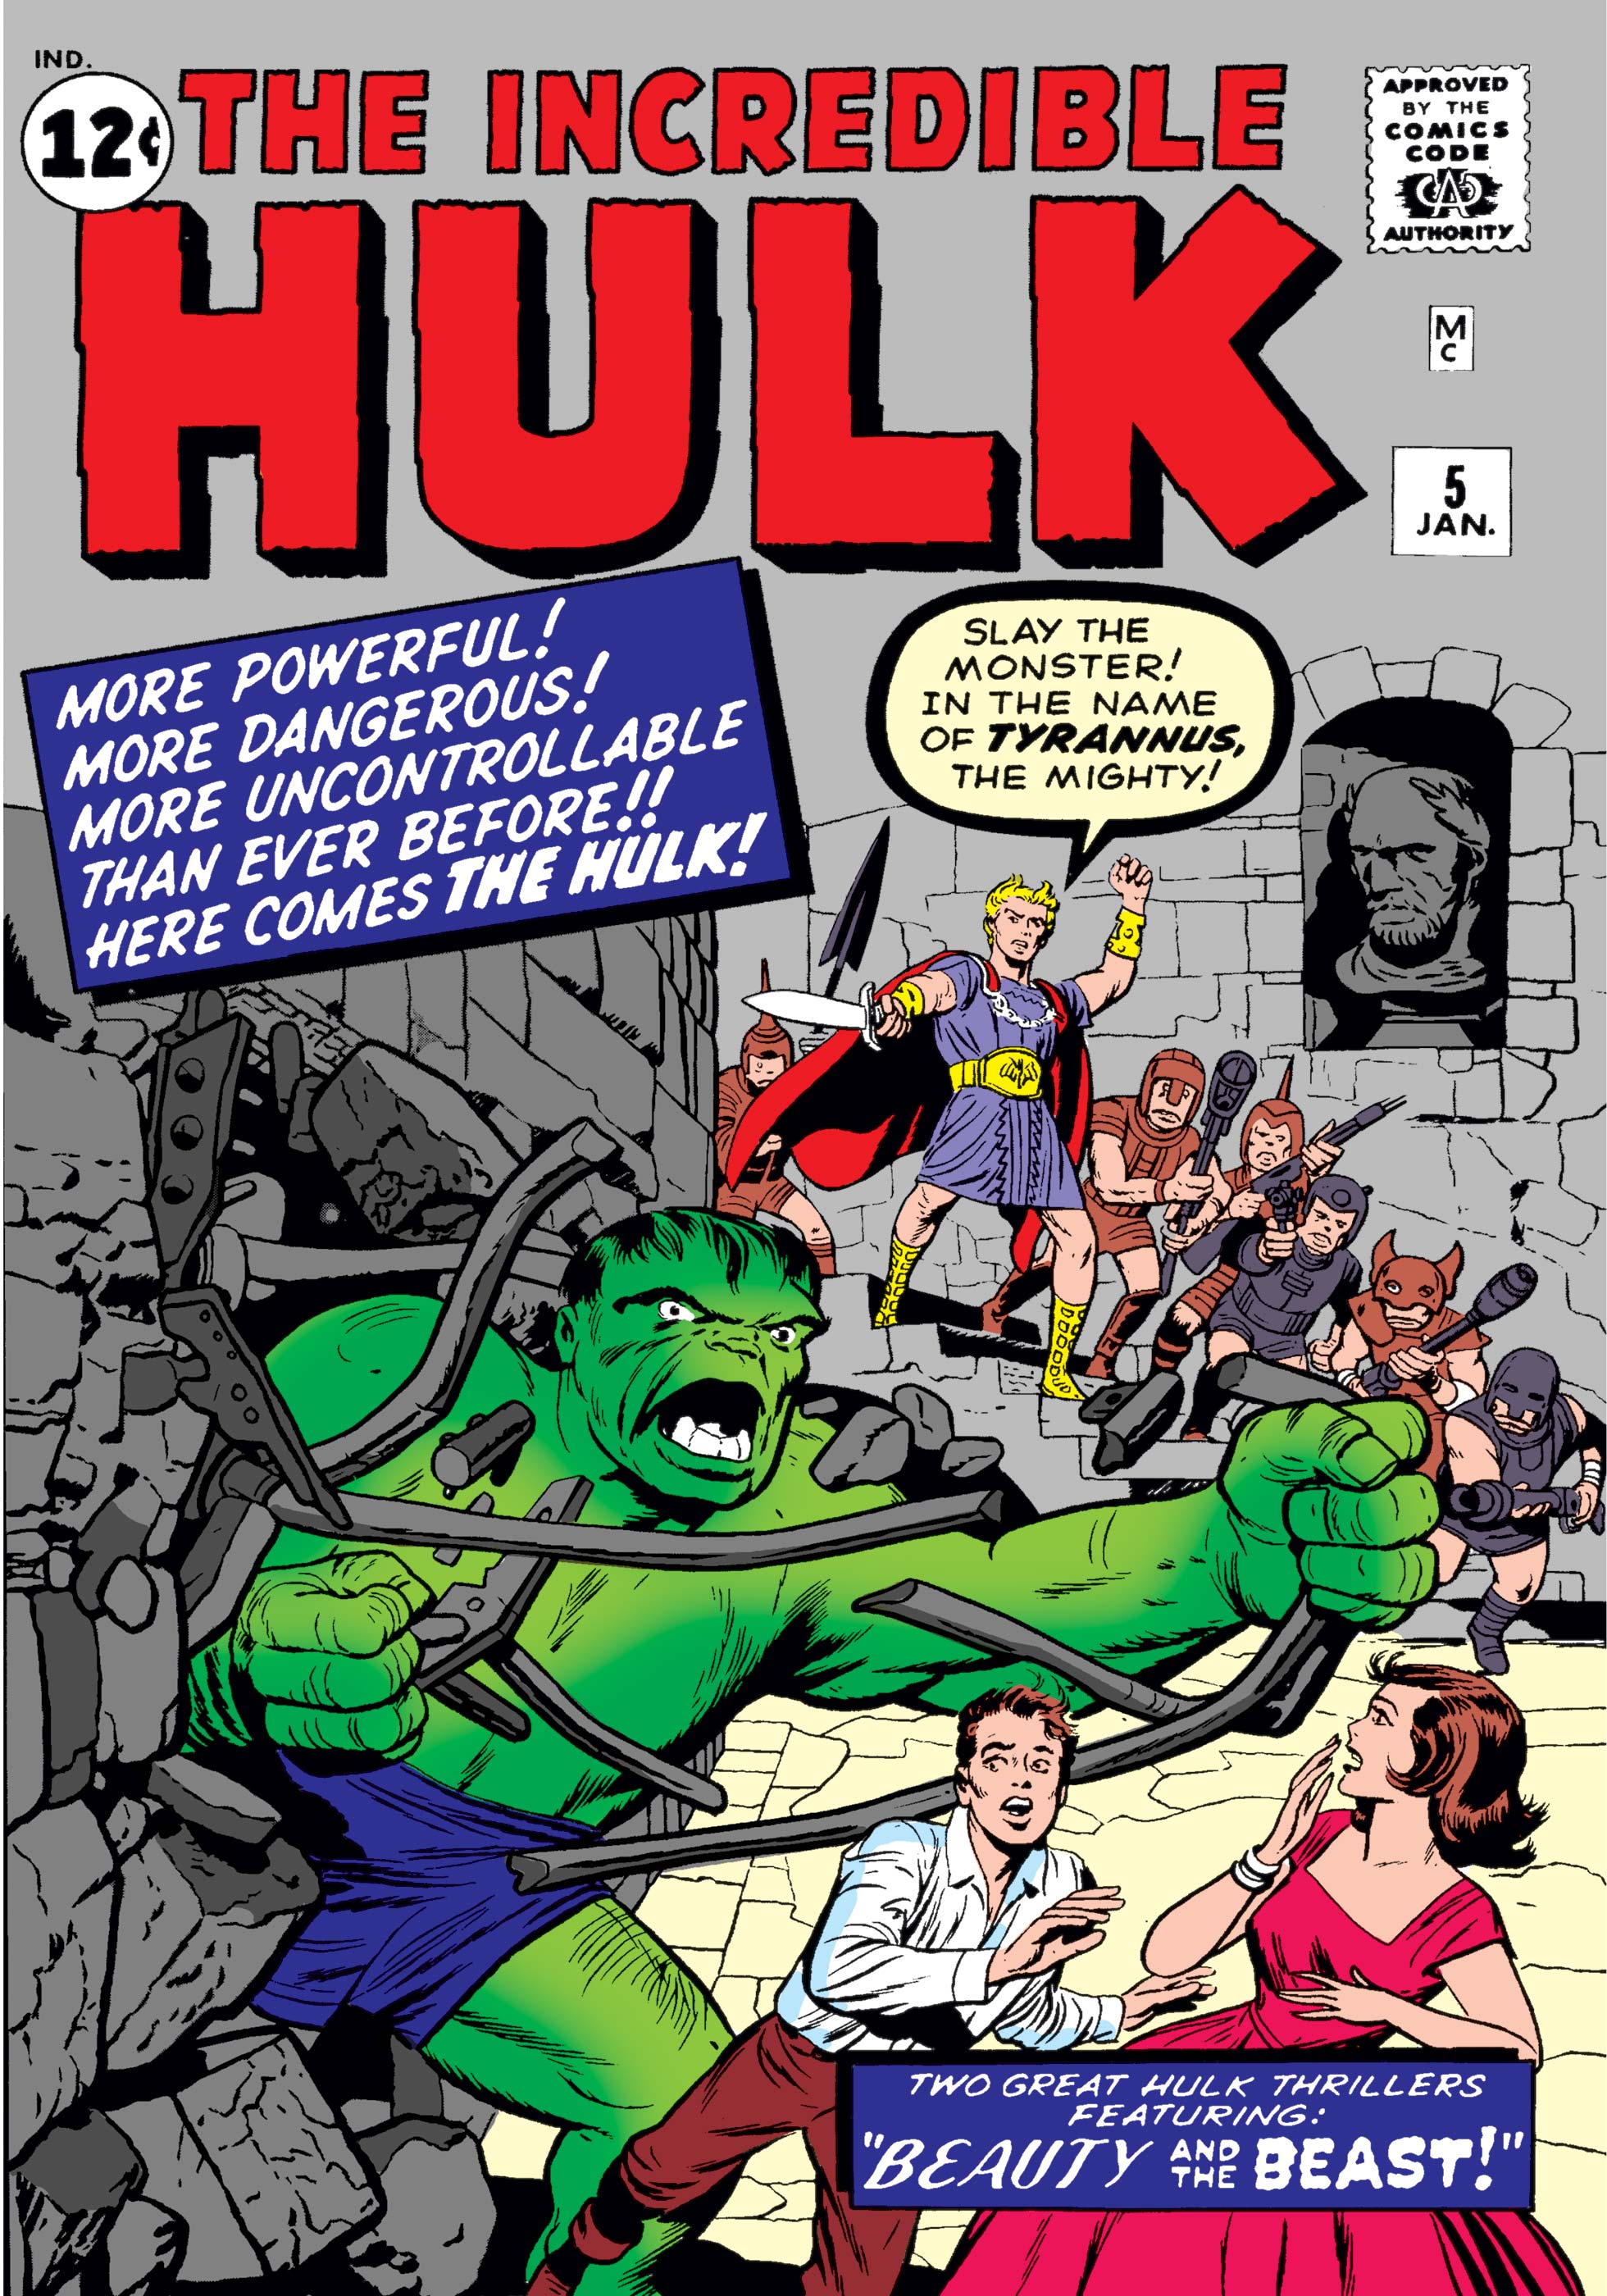 Incredible hulk 5